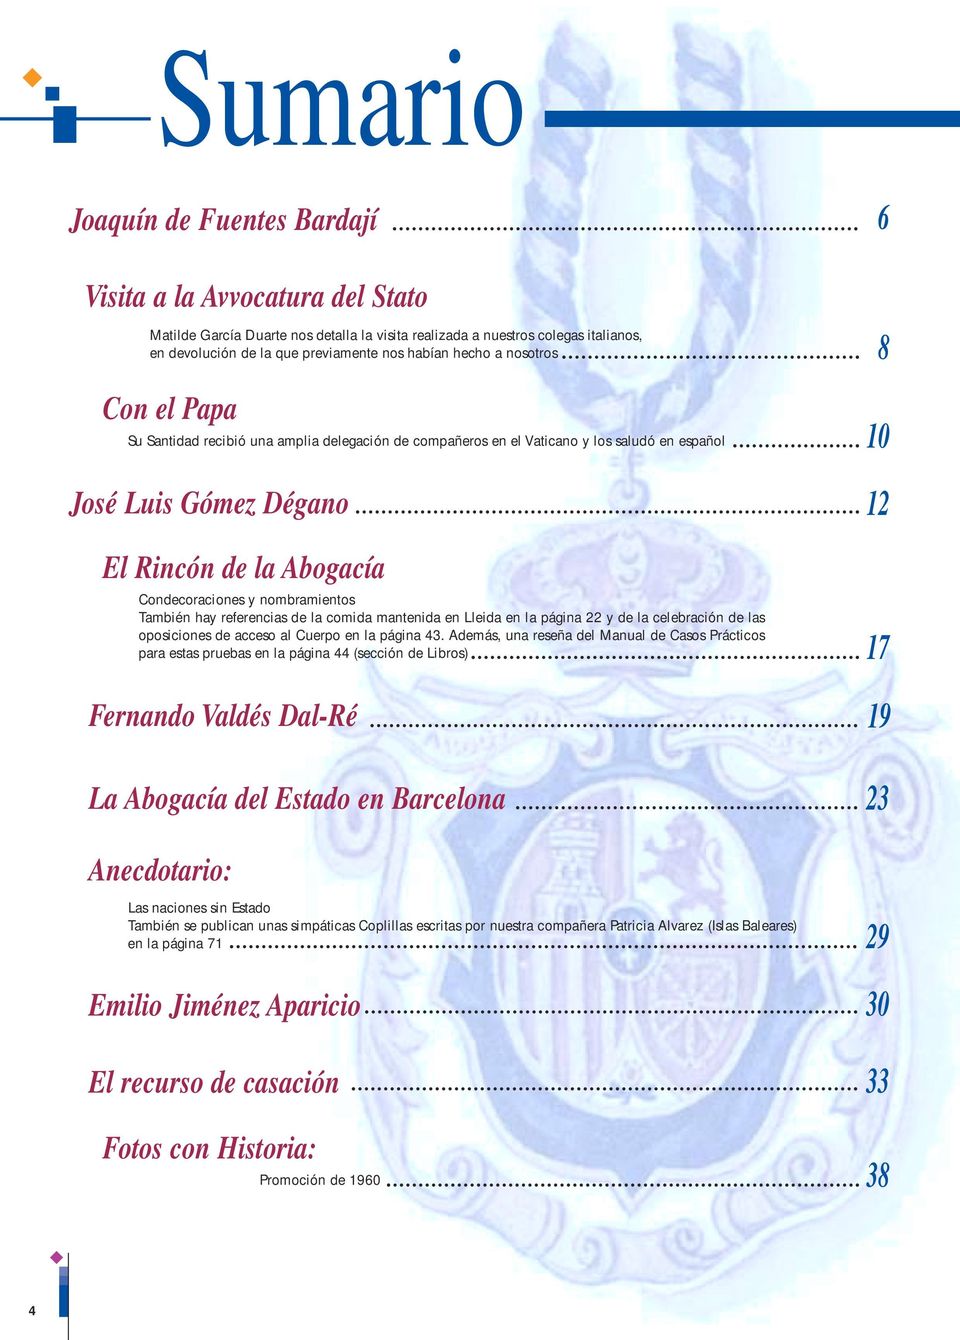 nombramientos También hay referencias de la comida mantenida en Lleida en la página 22 y de la celebración de las oposiciones de acceso al Cuerpo en la página 43.